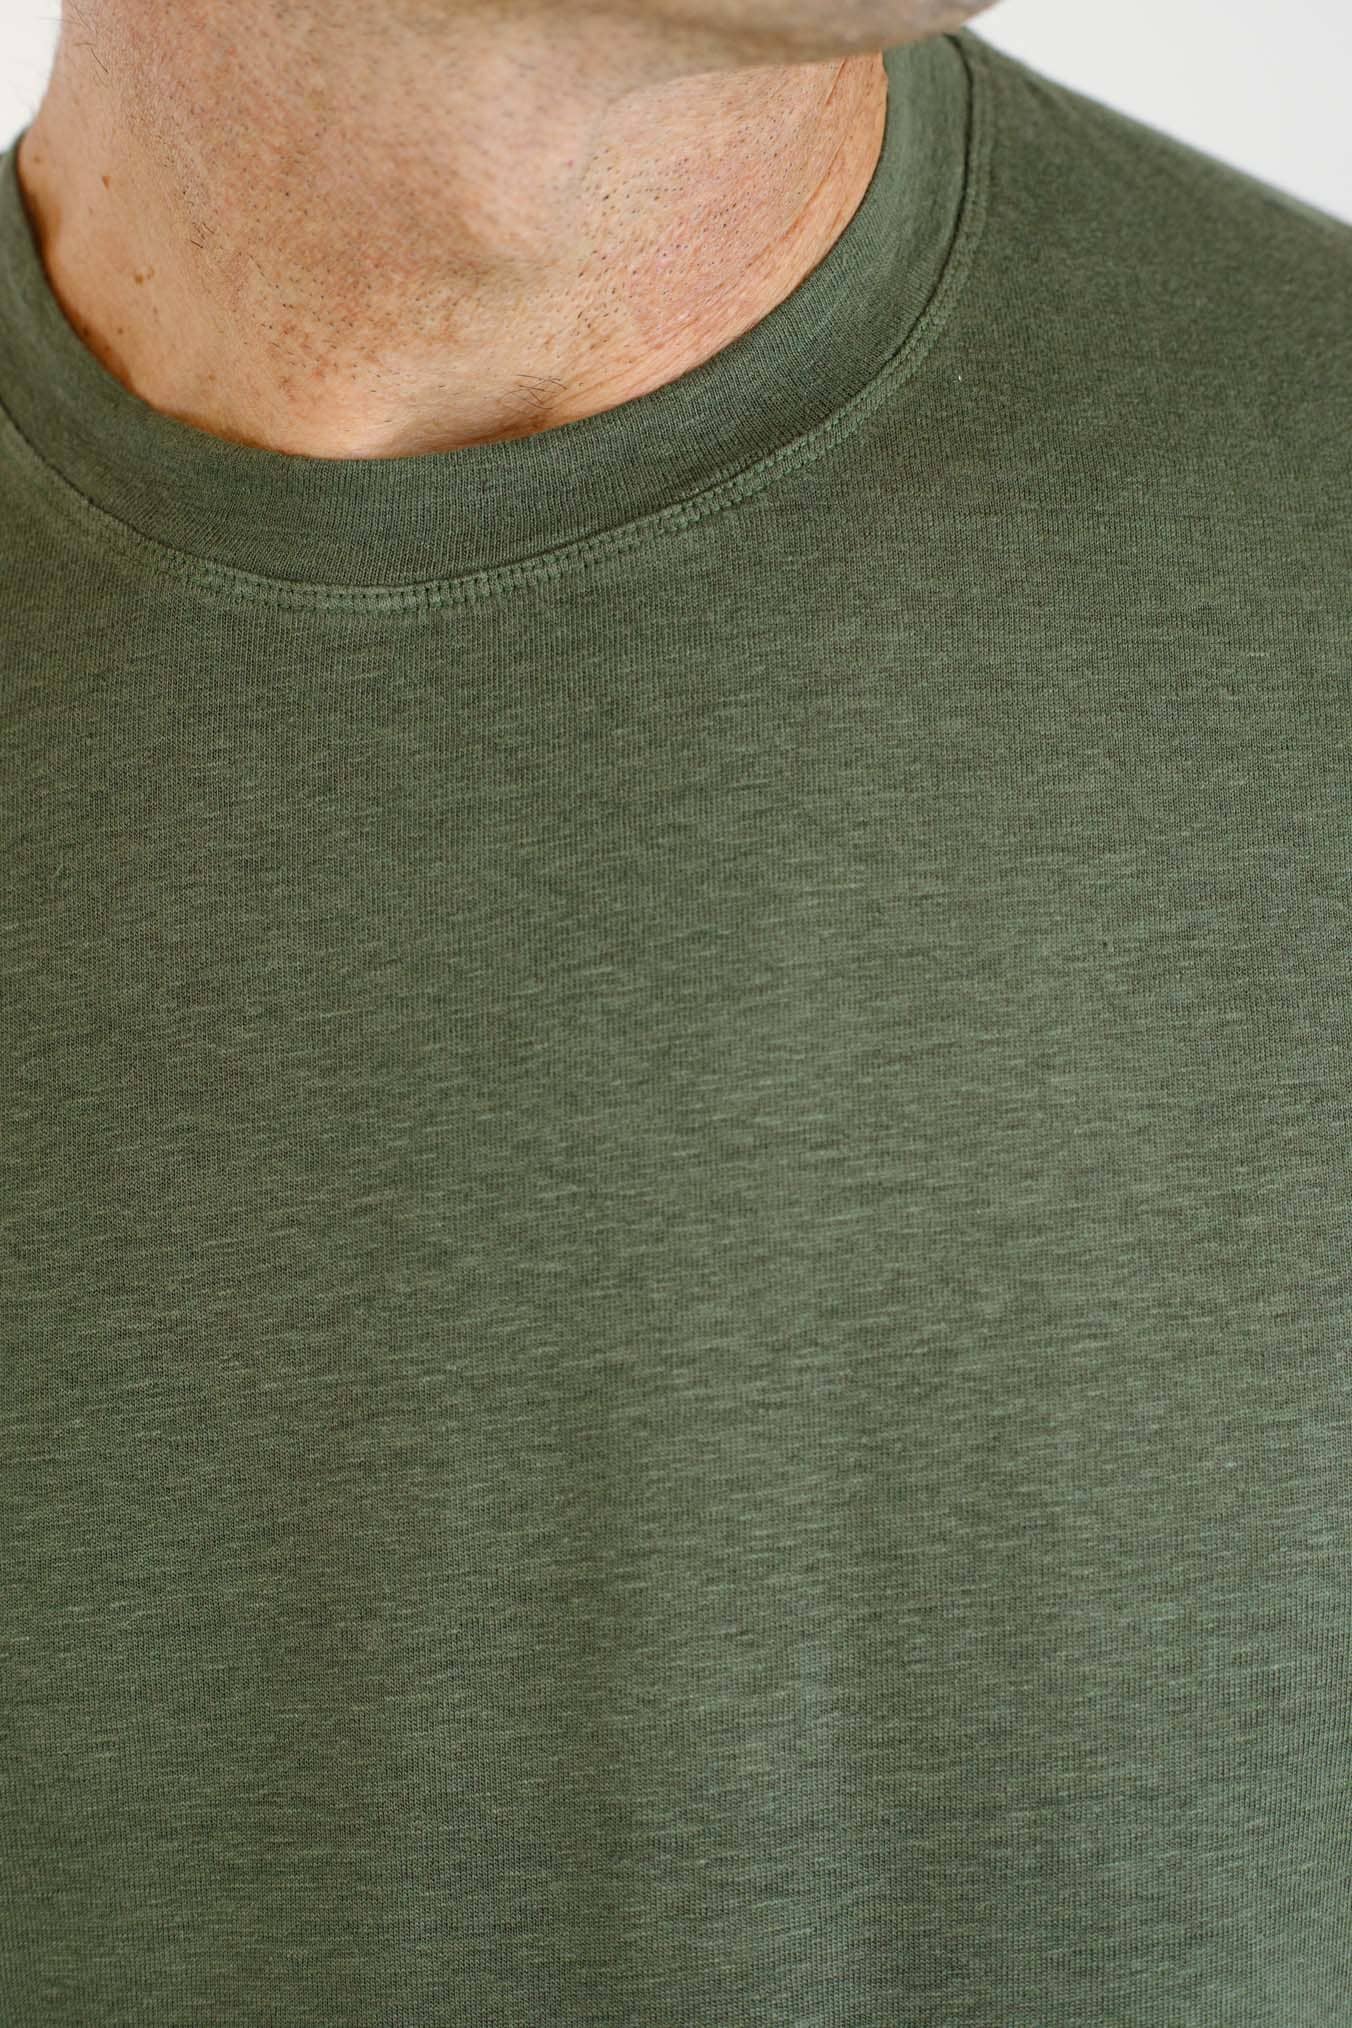 GUARINO T-Shirt Jersey Lino Maniche Corte Verde Militare